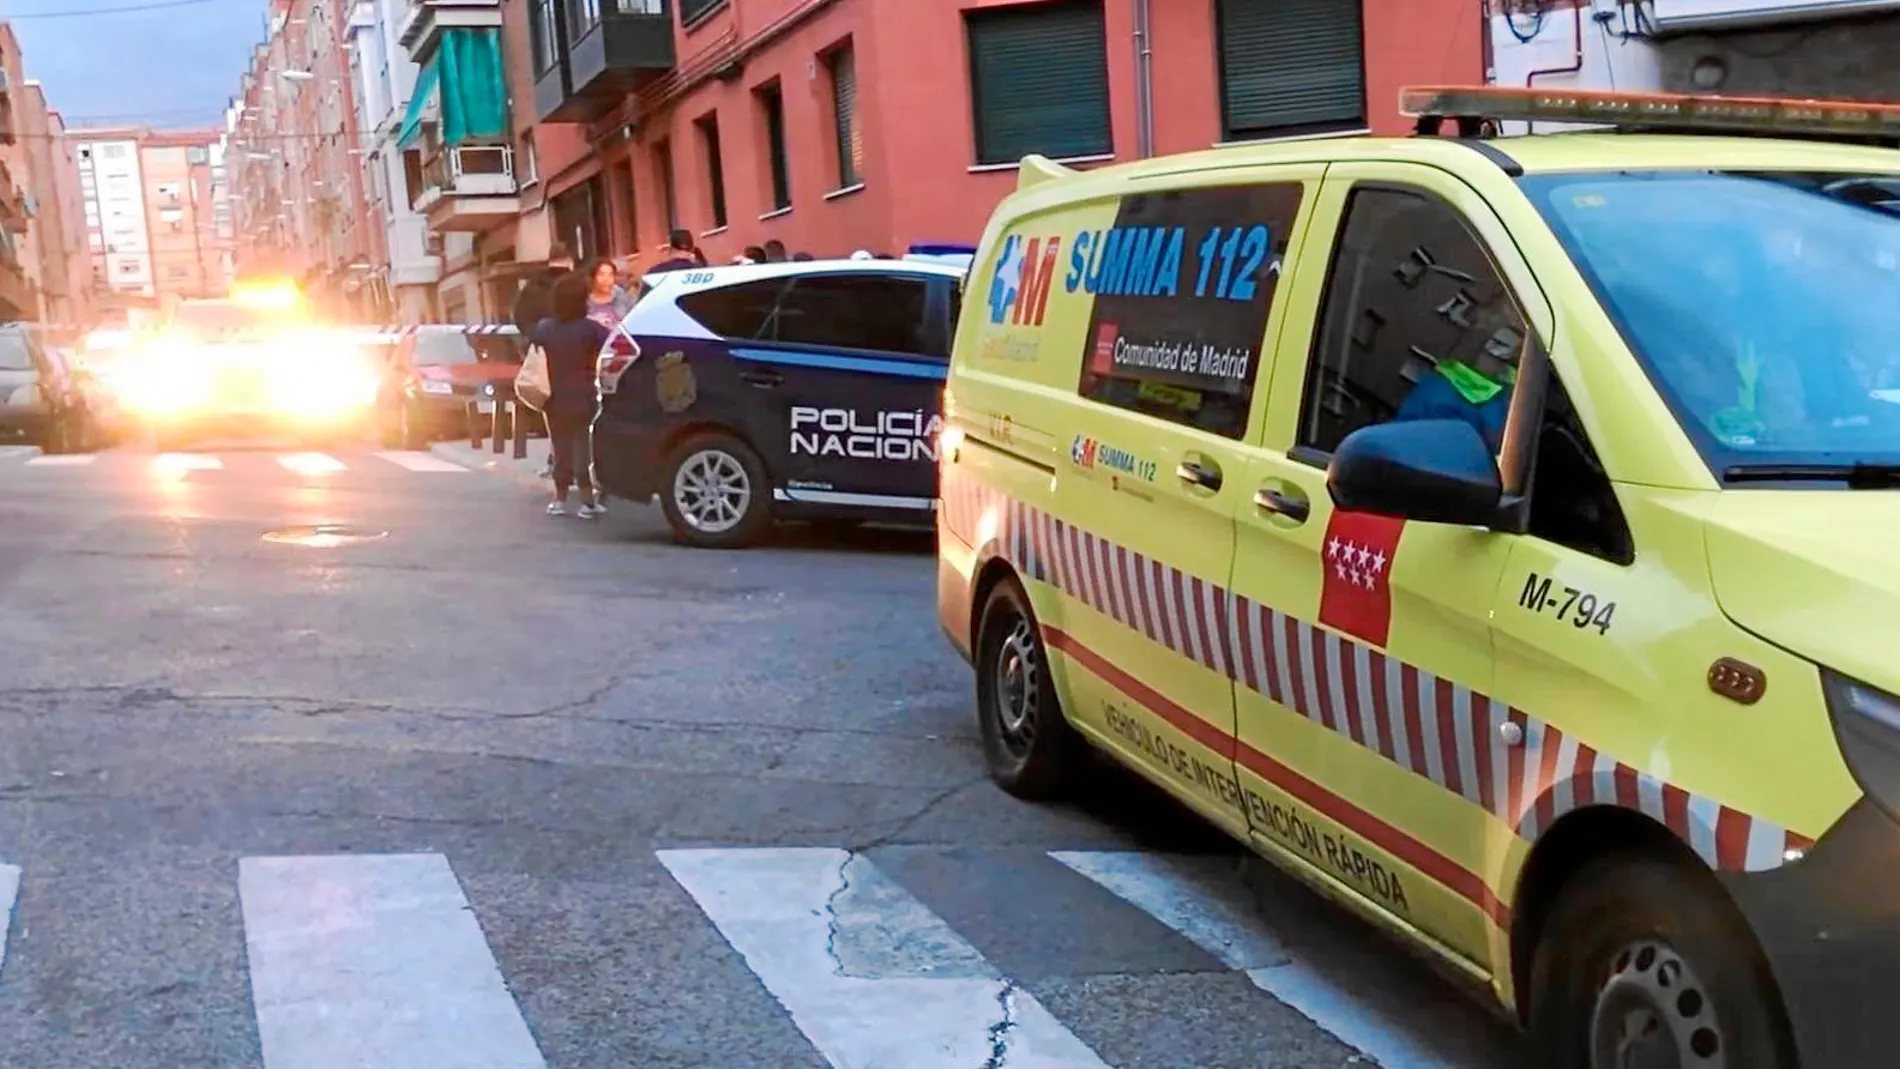 Los hechos tuvieron lugar sobre las 18:40 horas en el número 15 de la calle Juan Pascual, en Ciudad Lineal / Emergencias 112